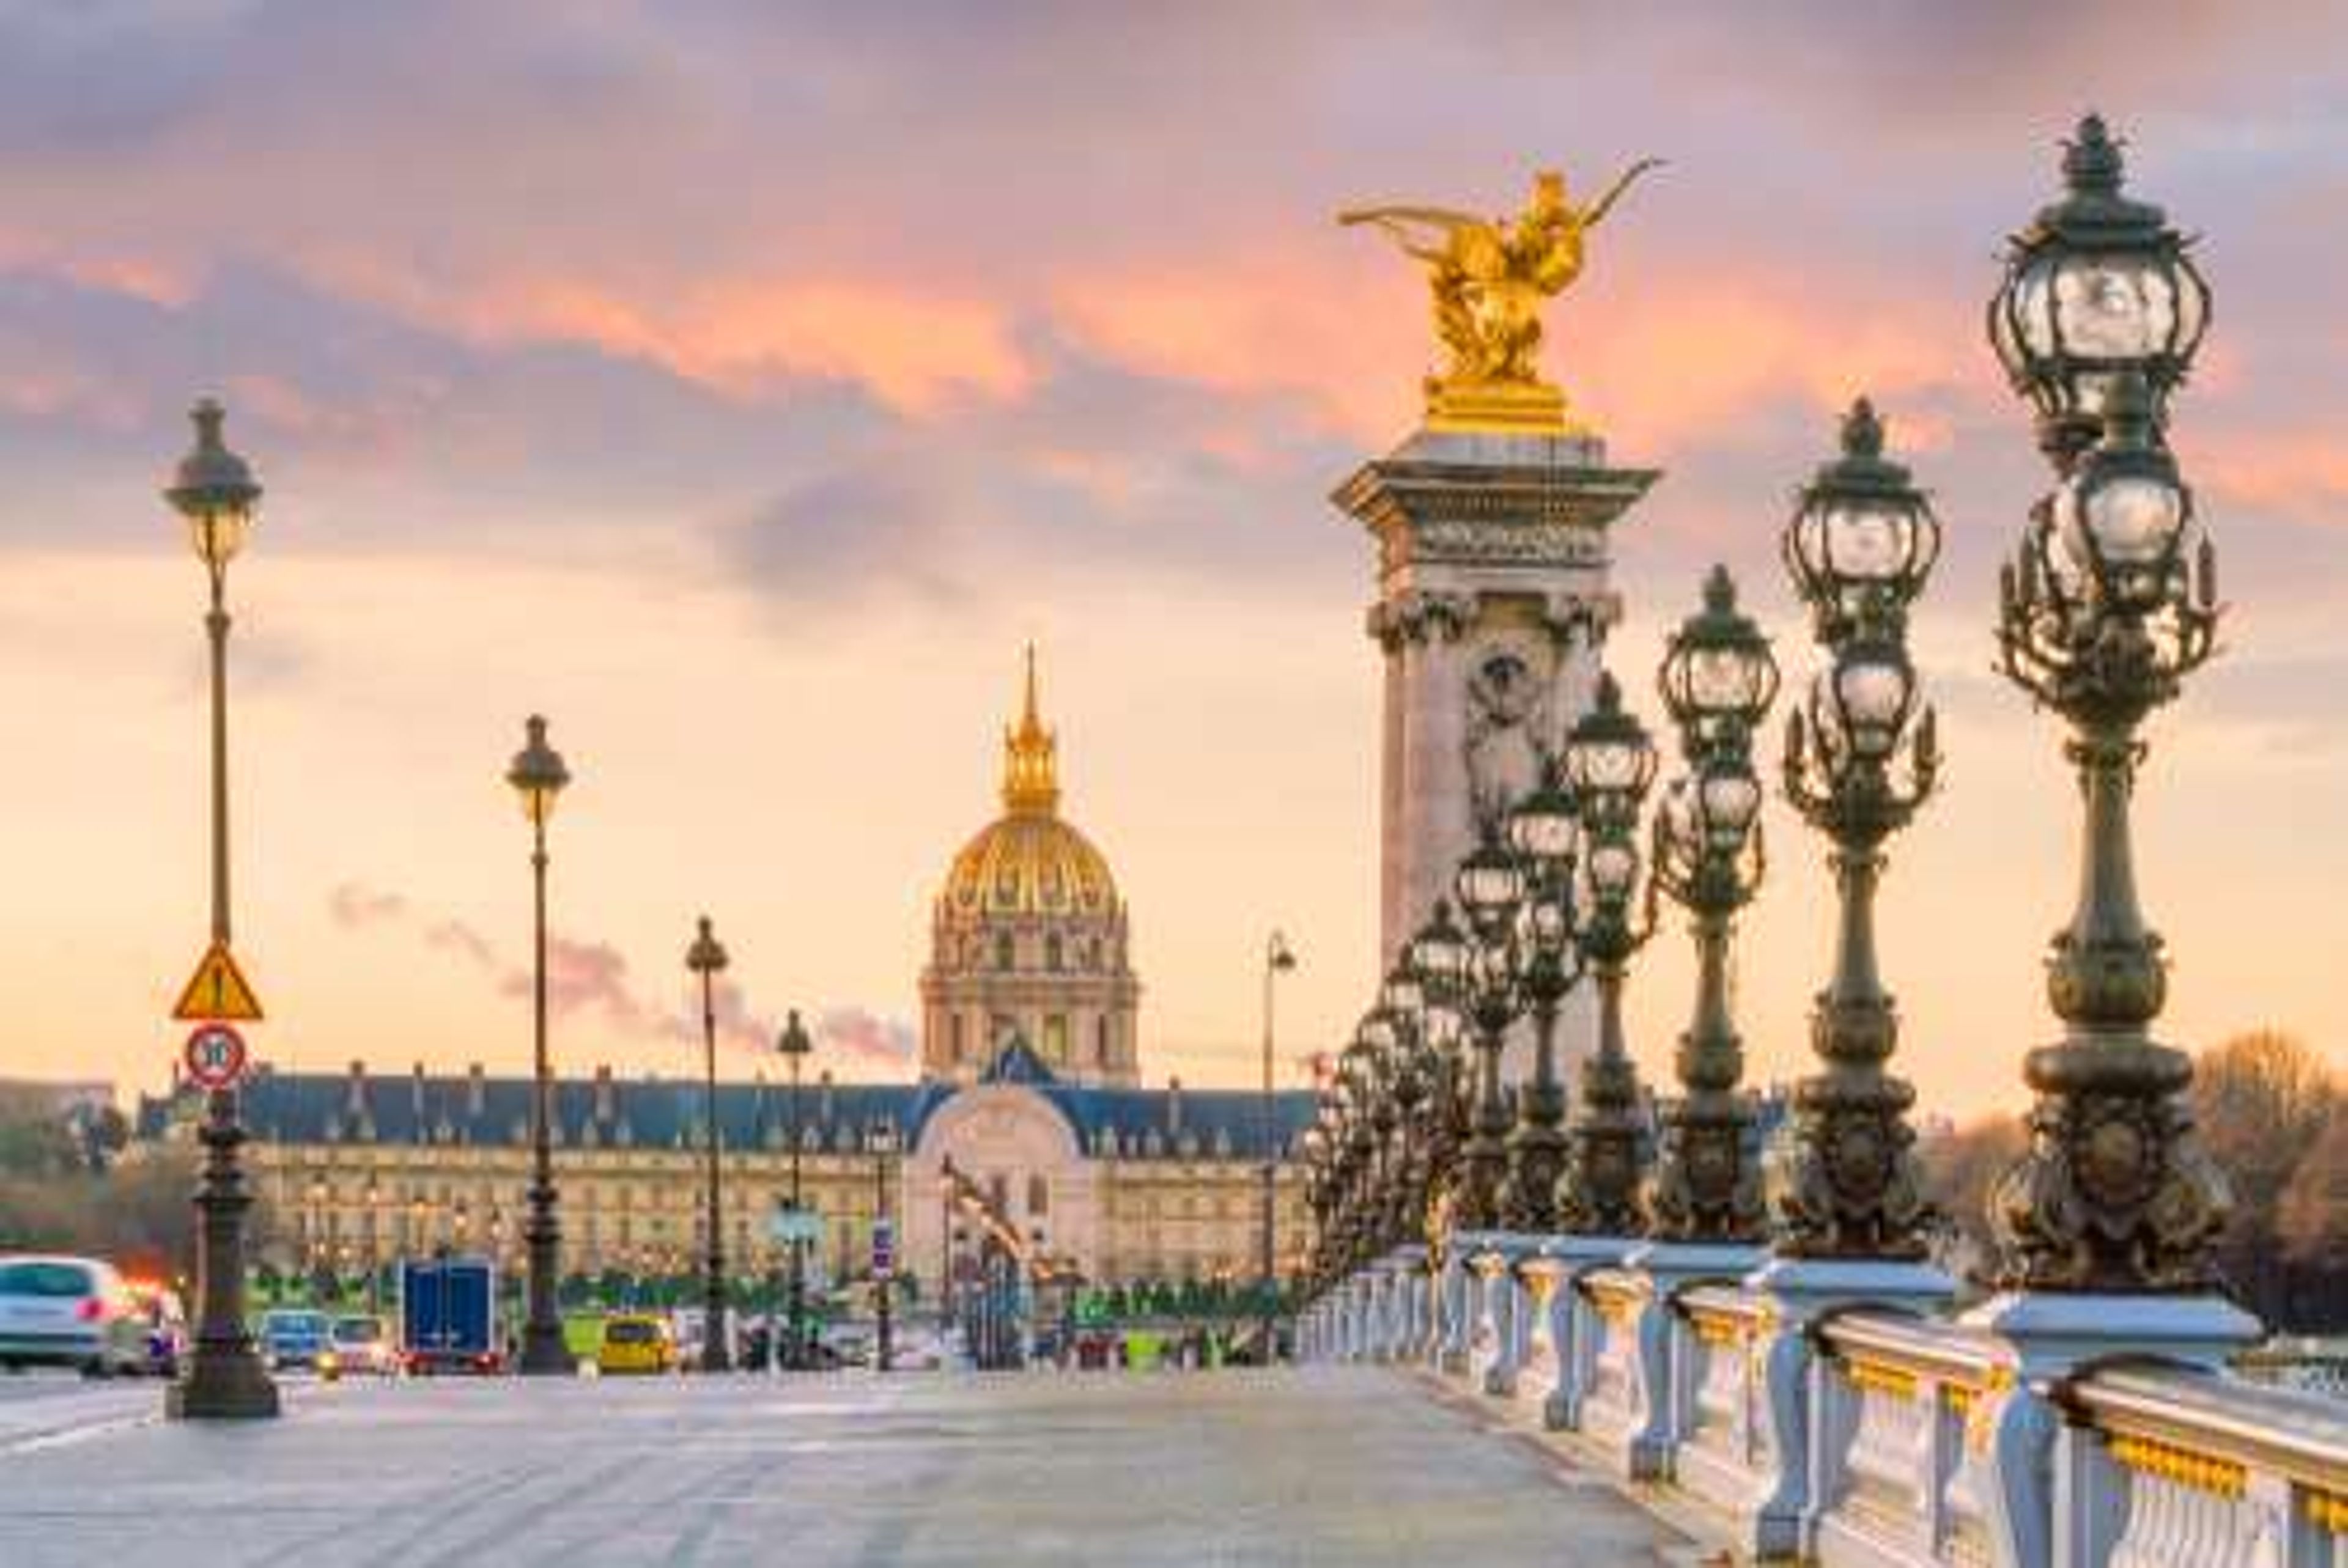 Frankrijk Parijs The Alexander III Bridge across Seine river